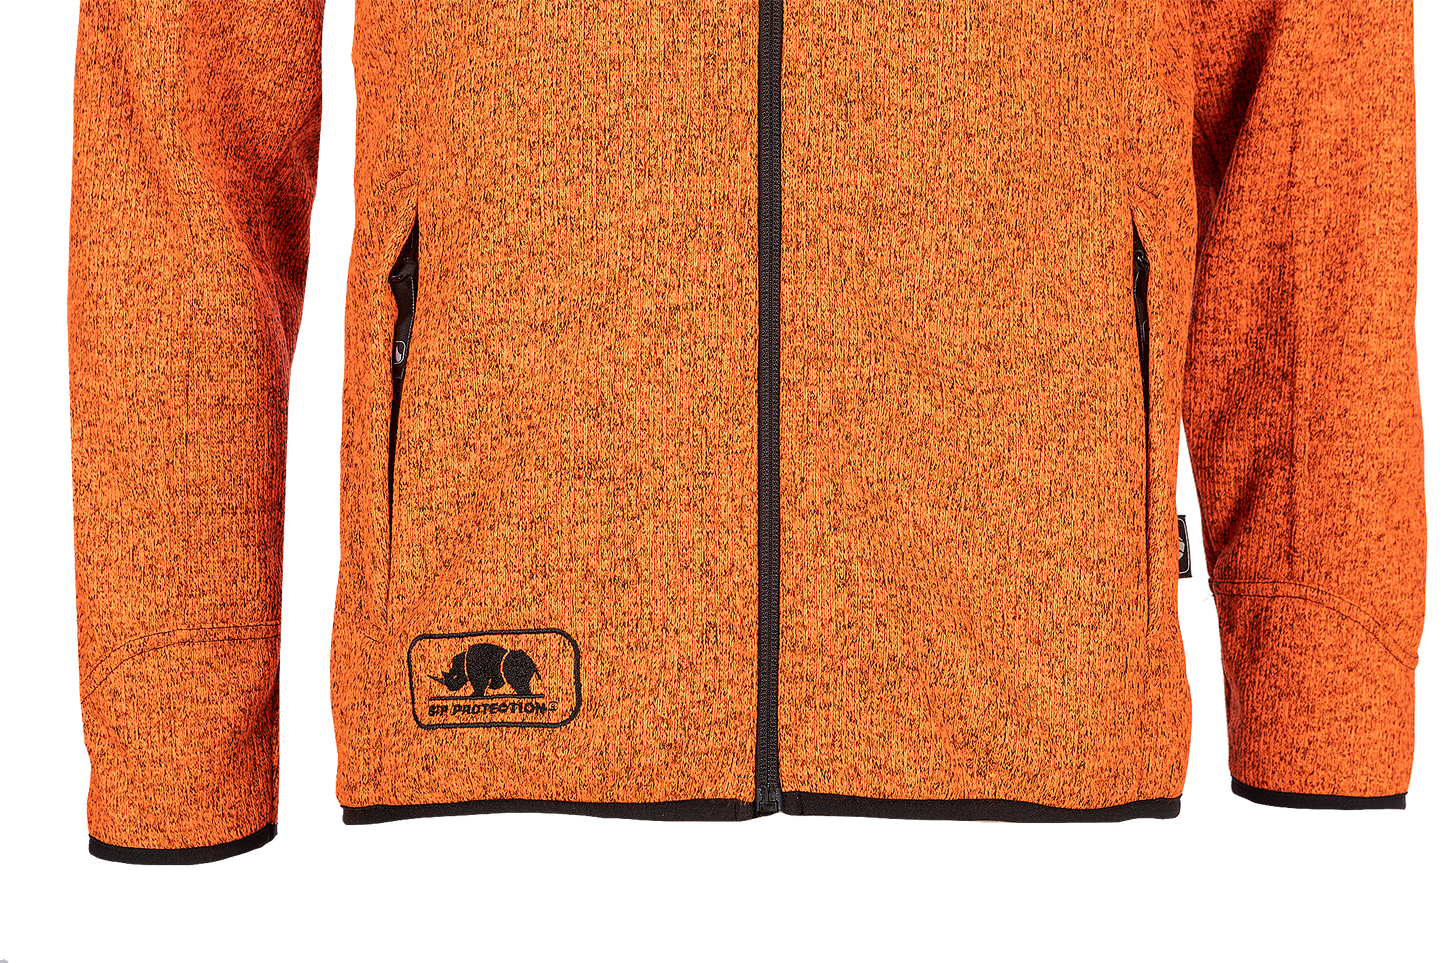 SIP Protection Tundra Jacket